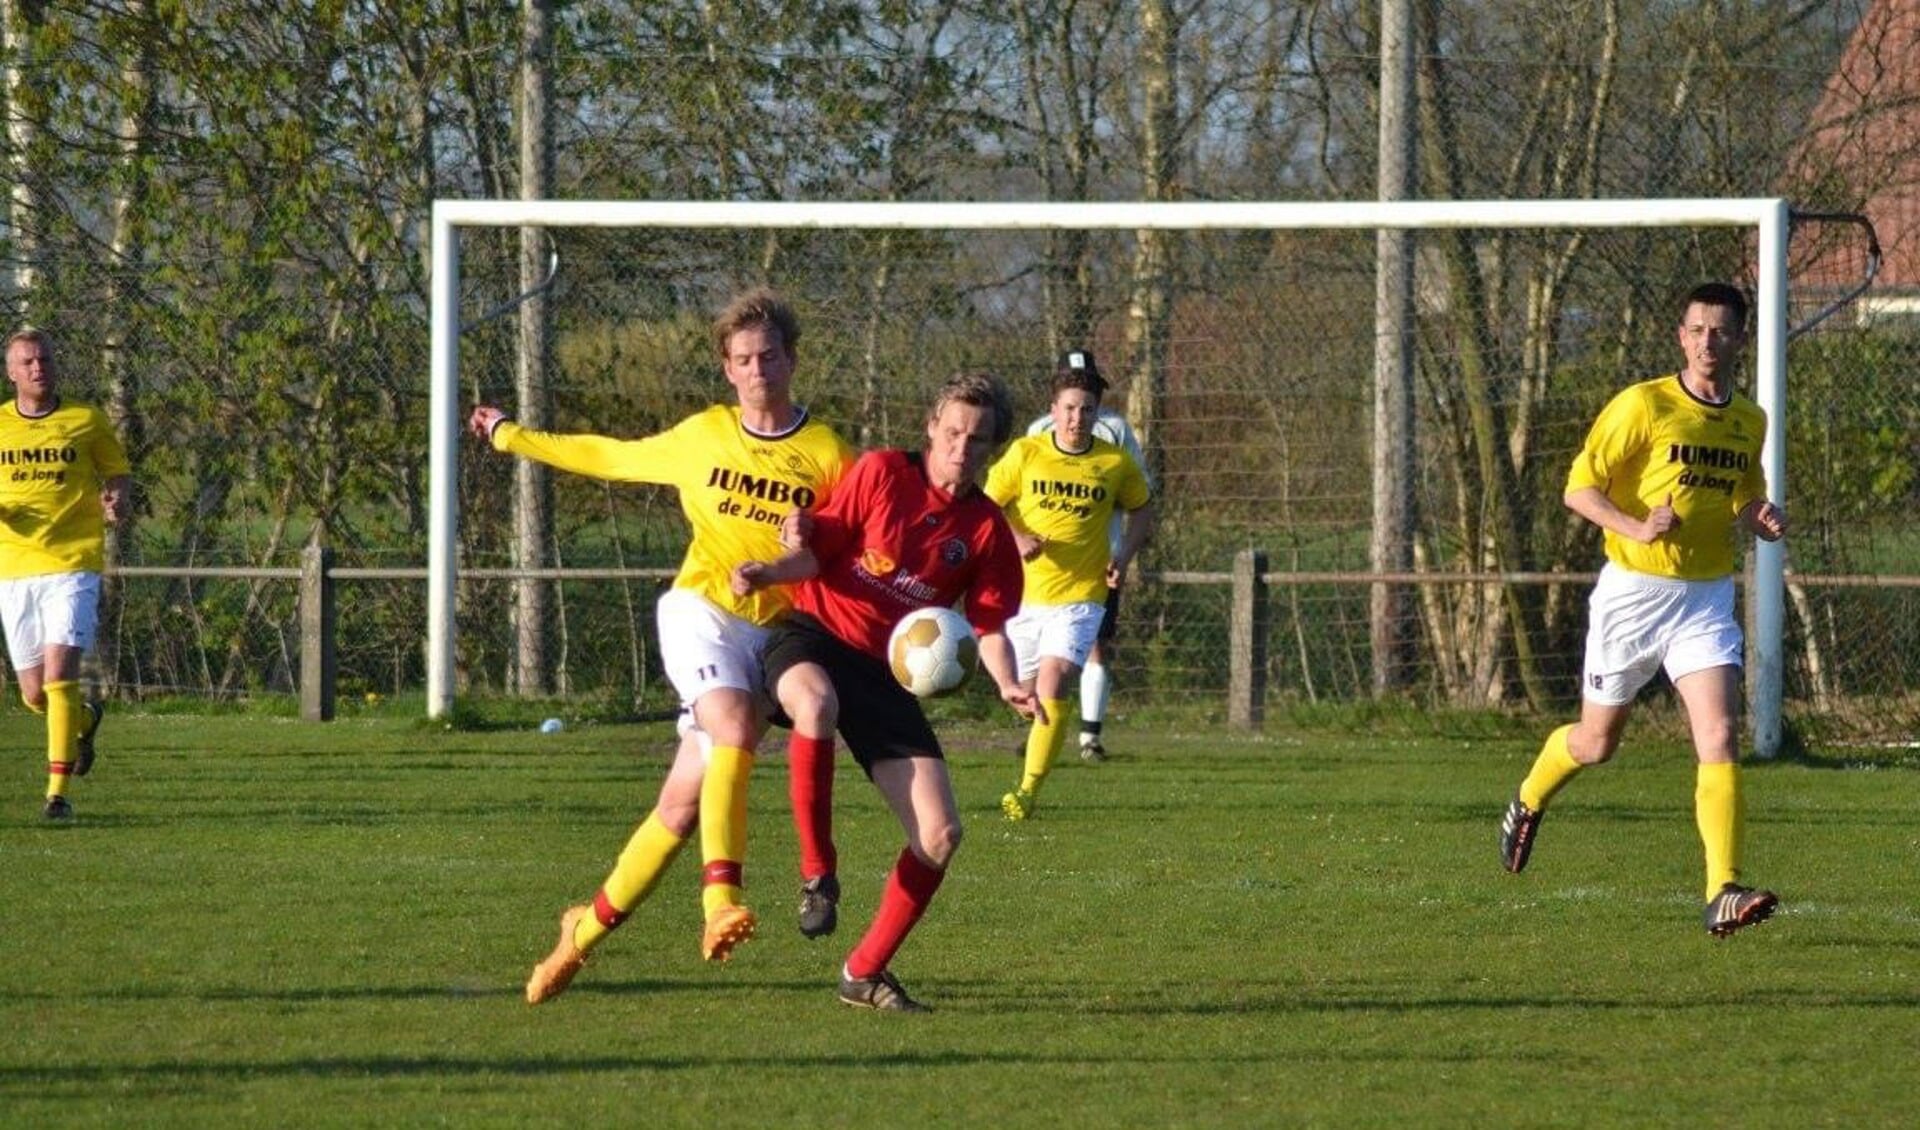 De derby tussen VV Zandhuizen en VV Oosterstreek in 2015; Wilco Boers, de huidige voorzitter van Zandhuizen in duel met een aantal Oosterstreekspelers.